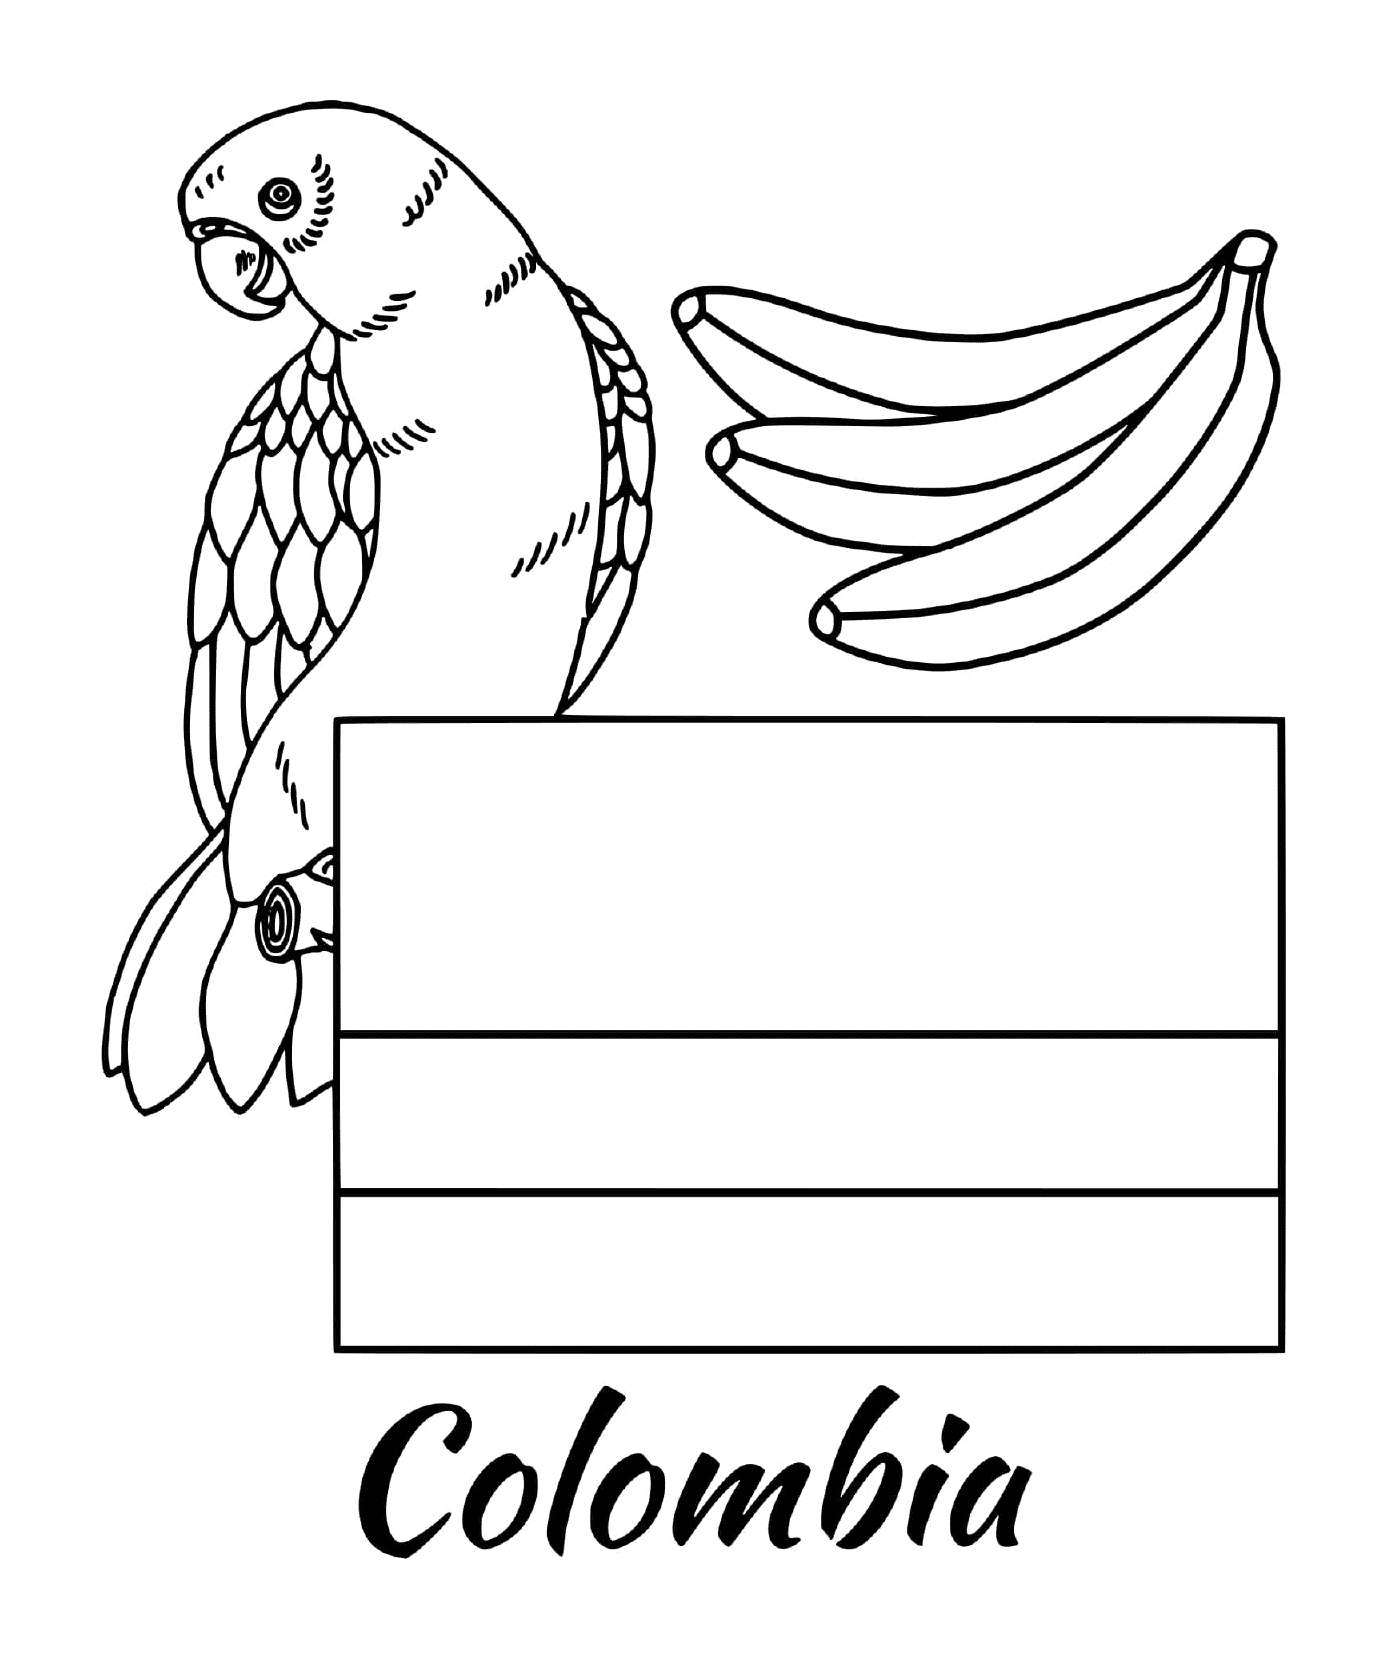  Bandera de Colombia, loro 